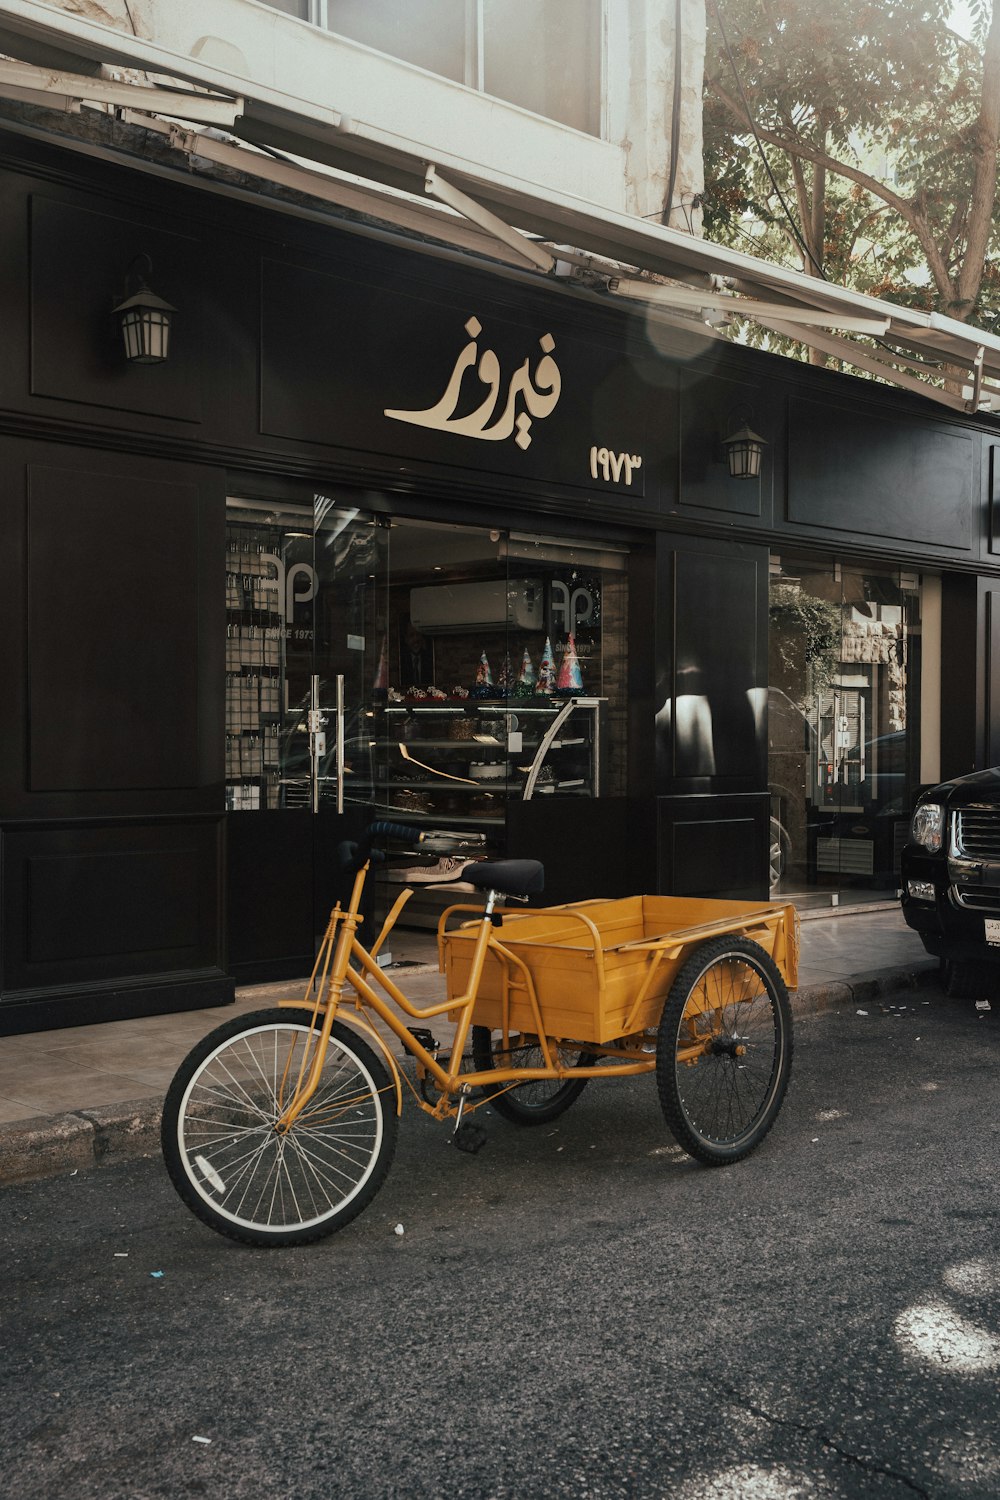 Triciclo negro y marrón estacionado junto a una tienda de madera marrón durante el día